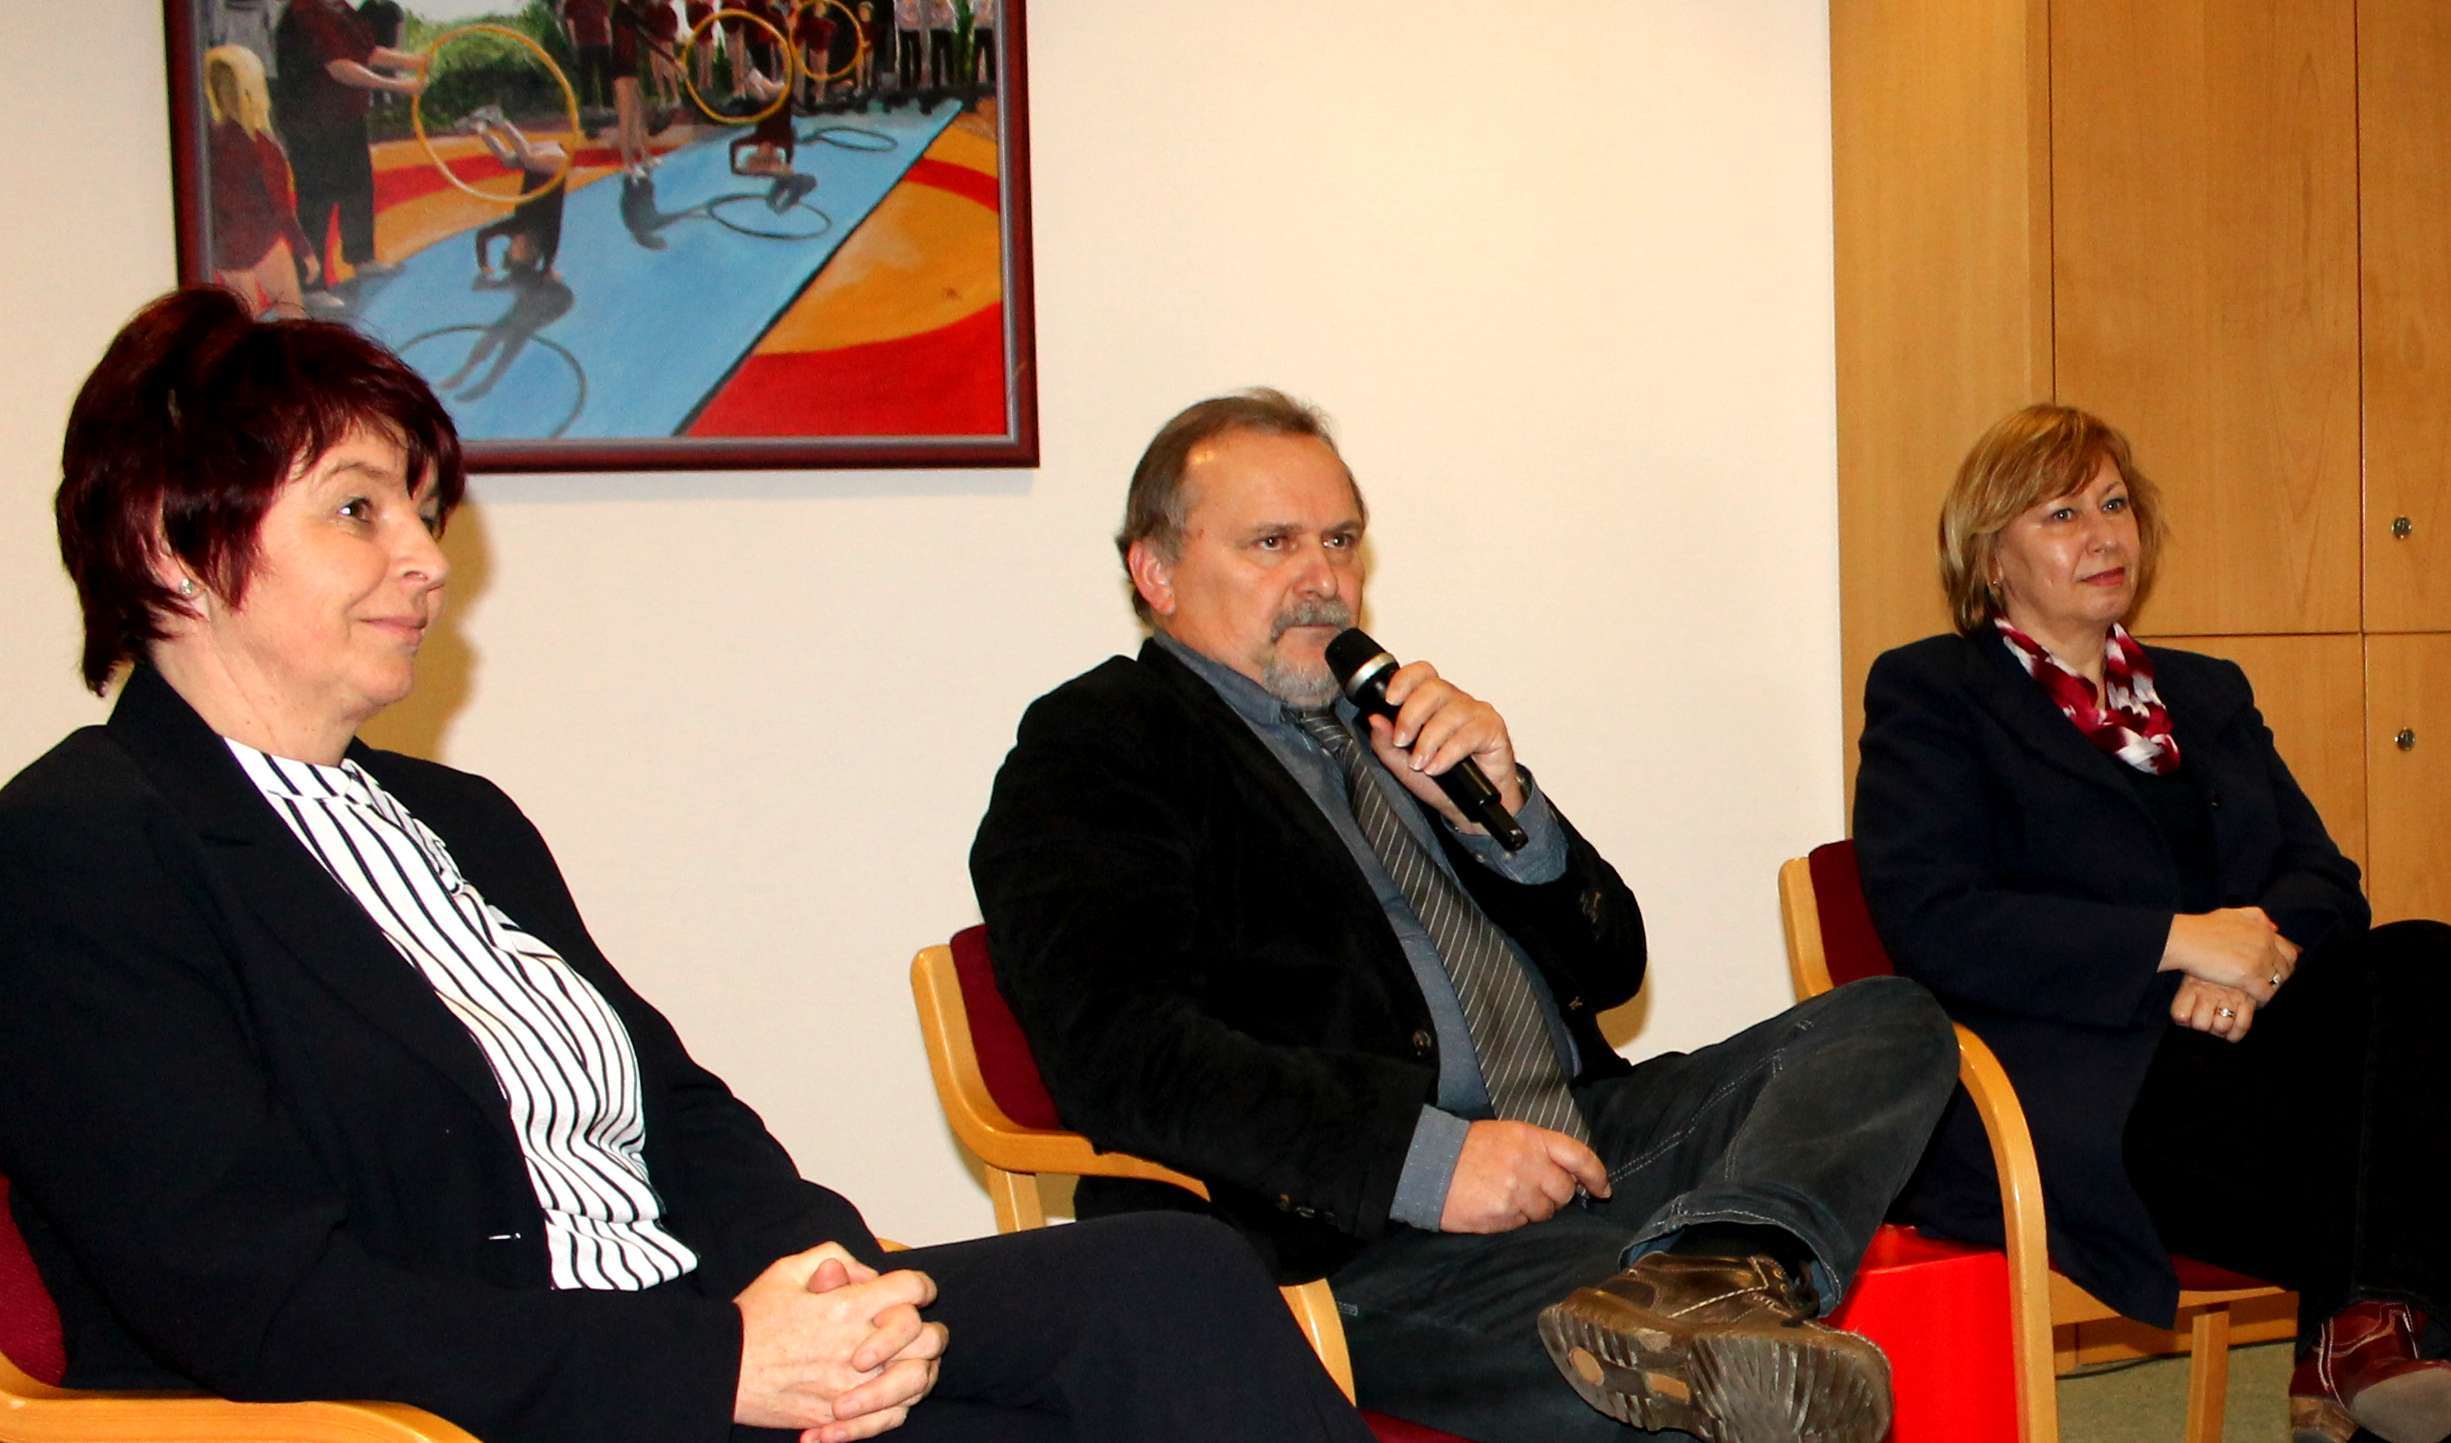 Katrin Pfannenschmidt (SV Eintracht Salzwedel), Dr. Lutz Bengsch (LSB) und Marina Kermer (MdB) (v.l.) während der Diskussion.